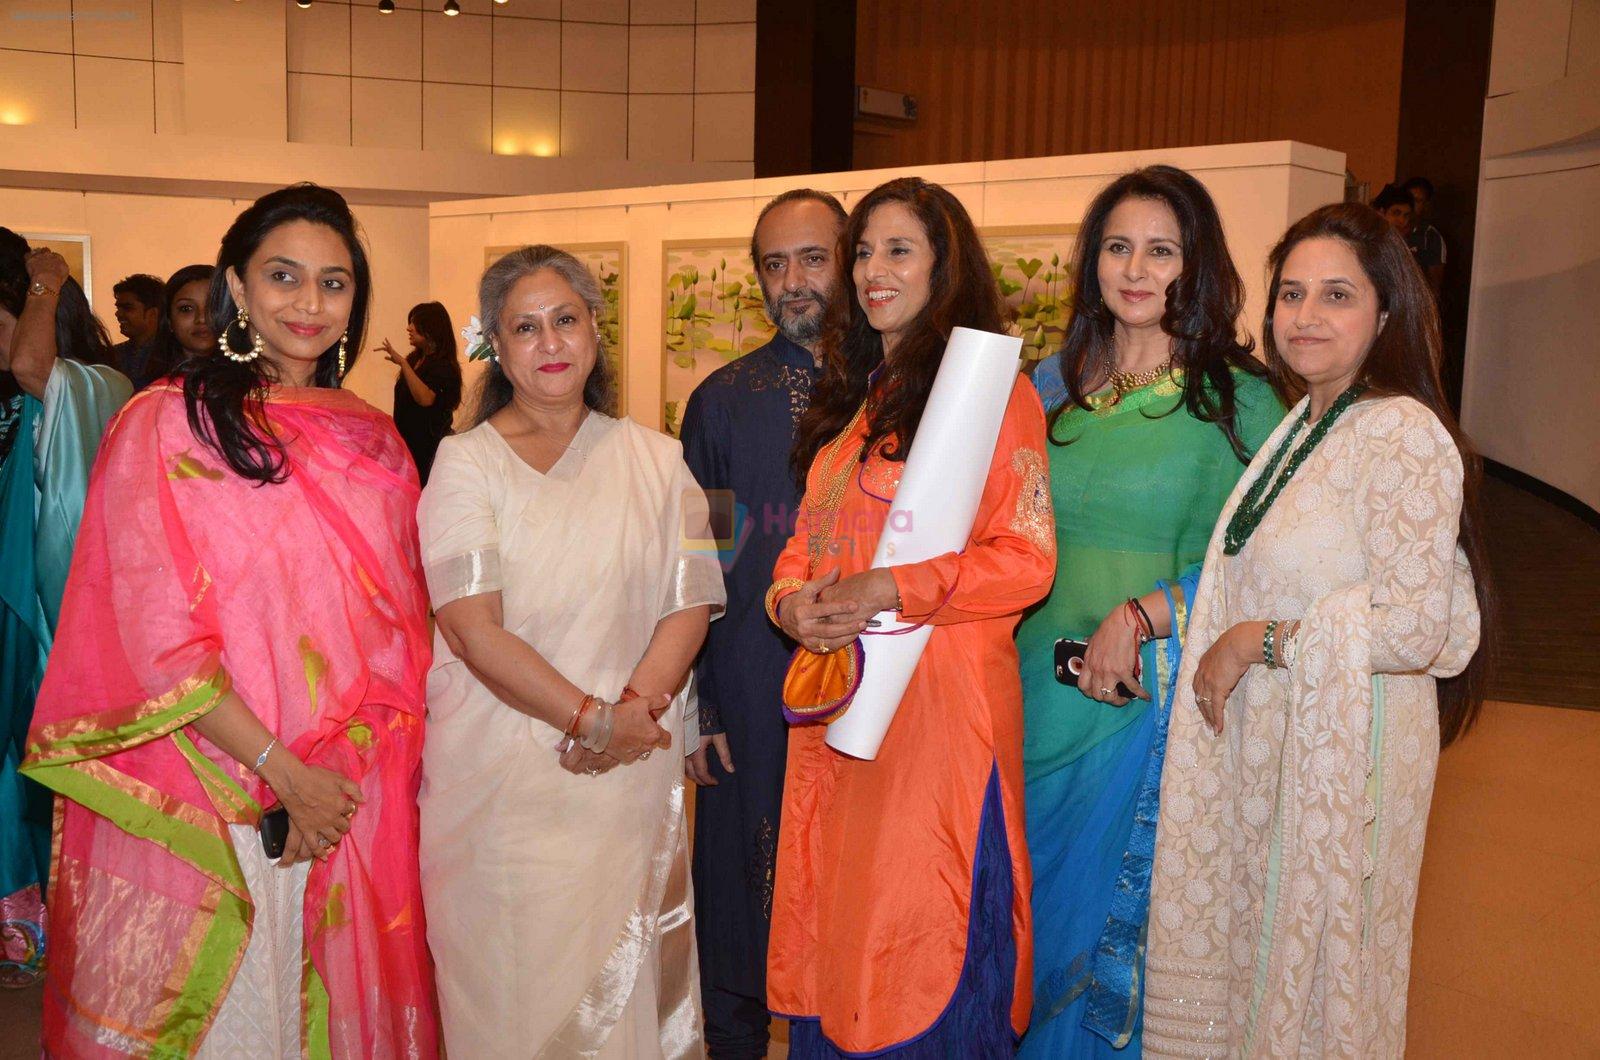 Jaya Bachchan, Poonam Dhillon, Shobhaa De at art exhibition launch with Bindu Kapoor of Yes Bank on 18th Nov 2015